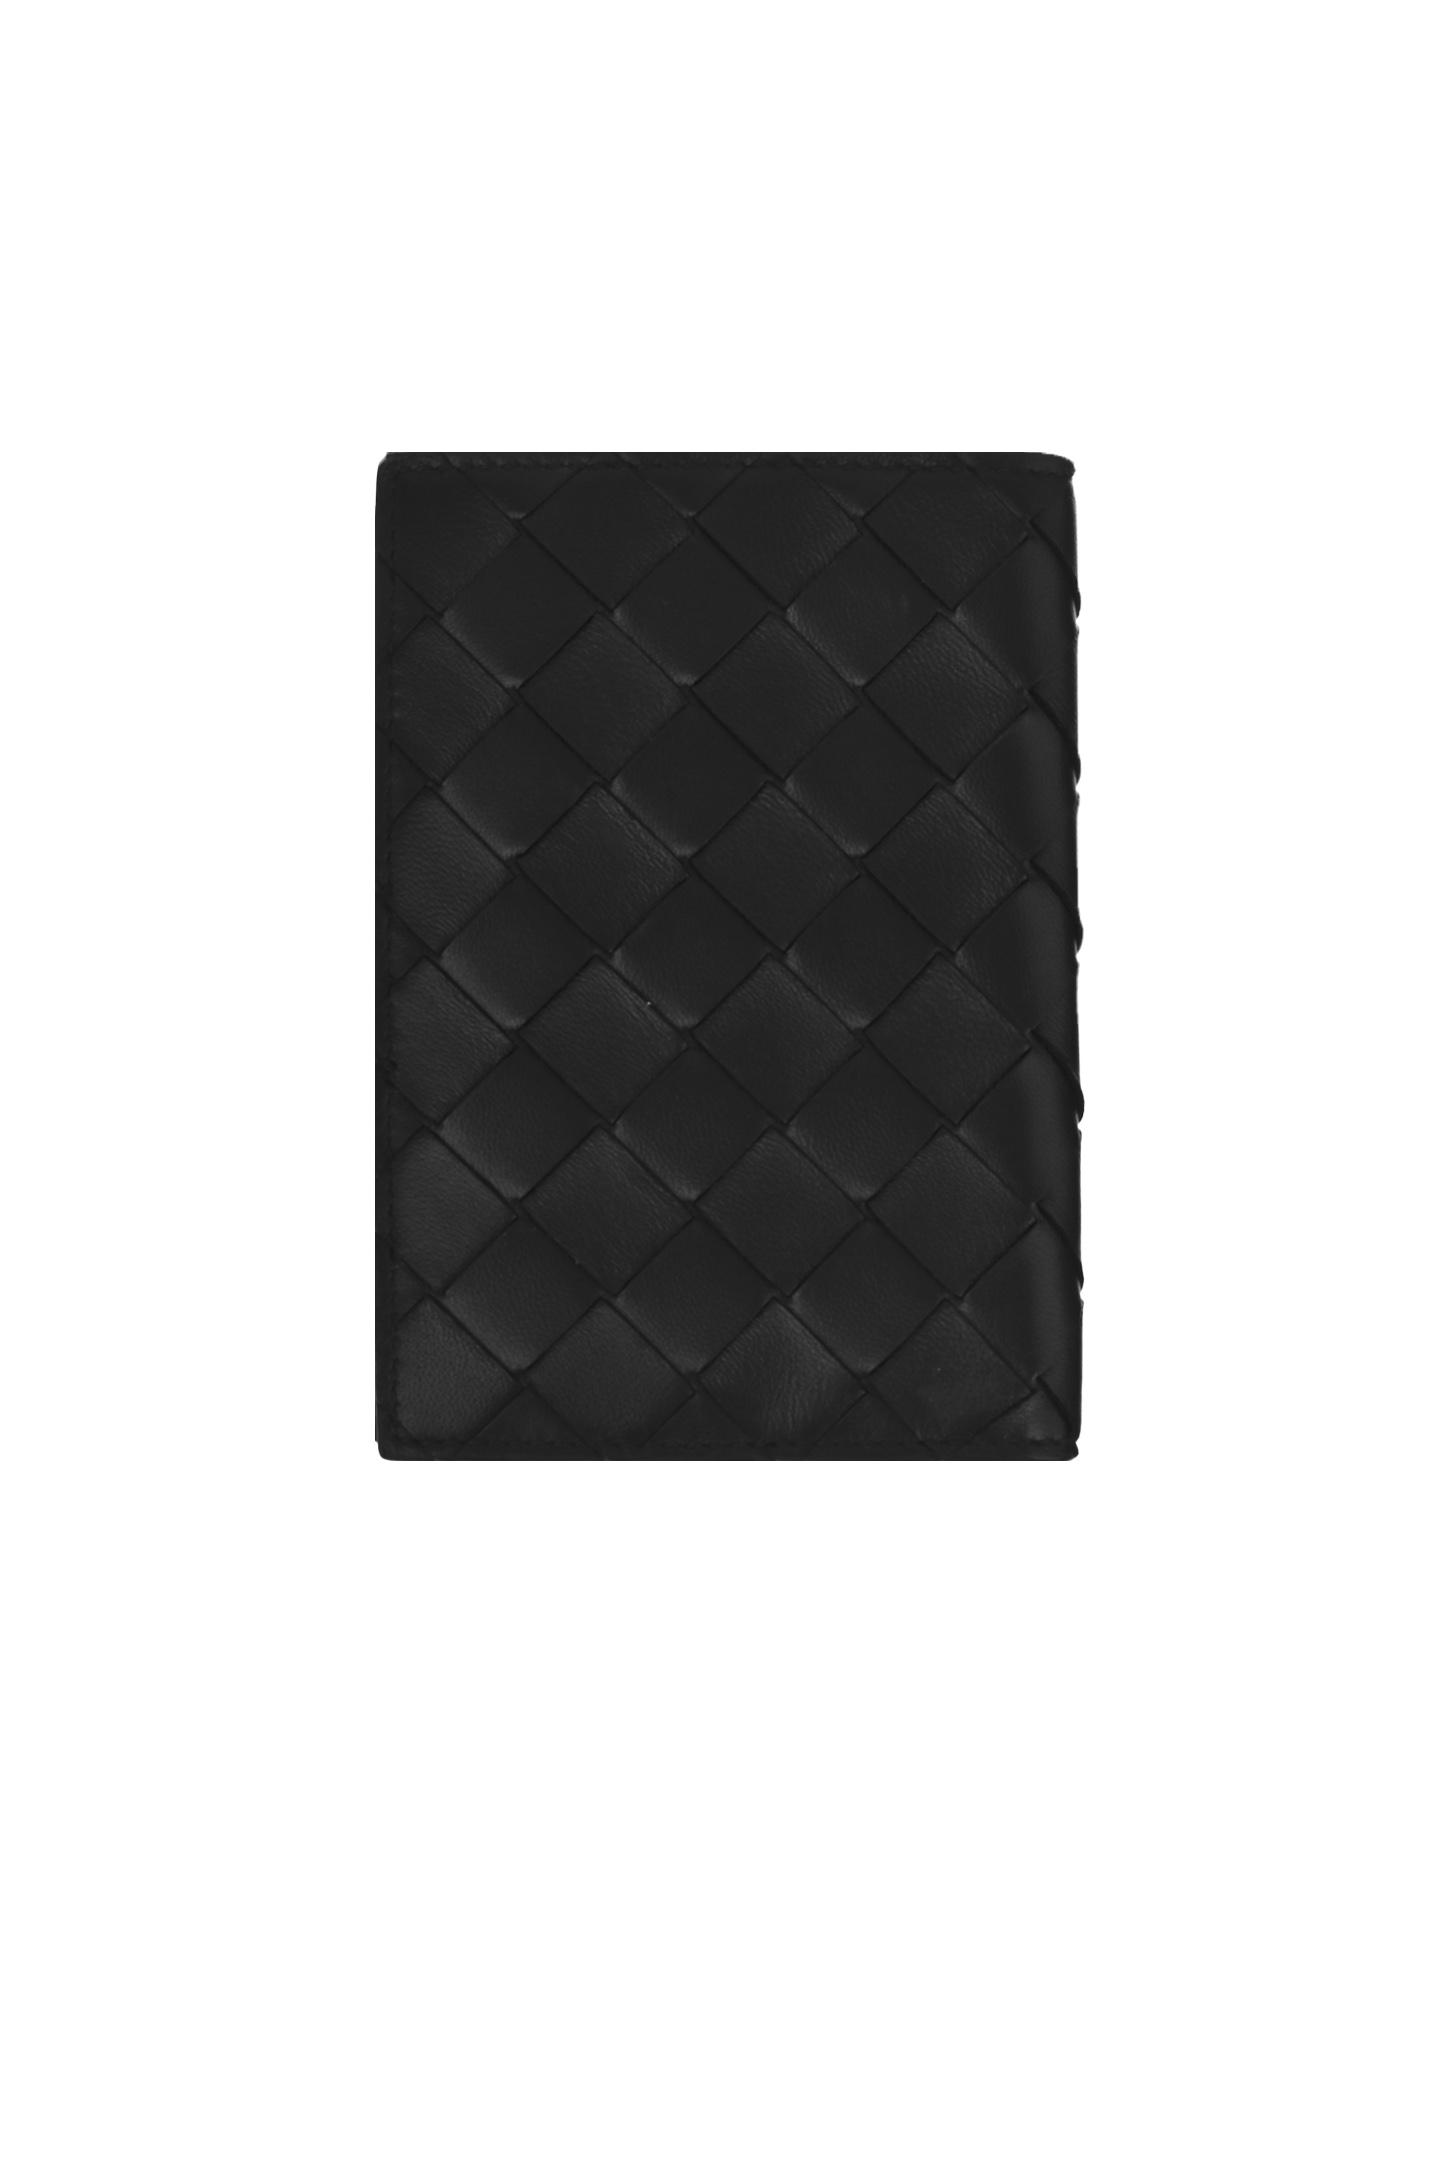 Обложка для паспорта BOTTEGA VENETA 608061VCPP2, цвет: Черный, Женский